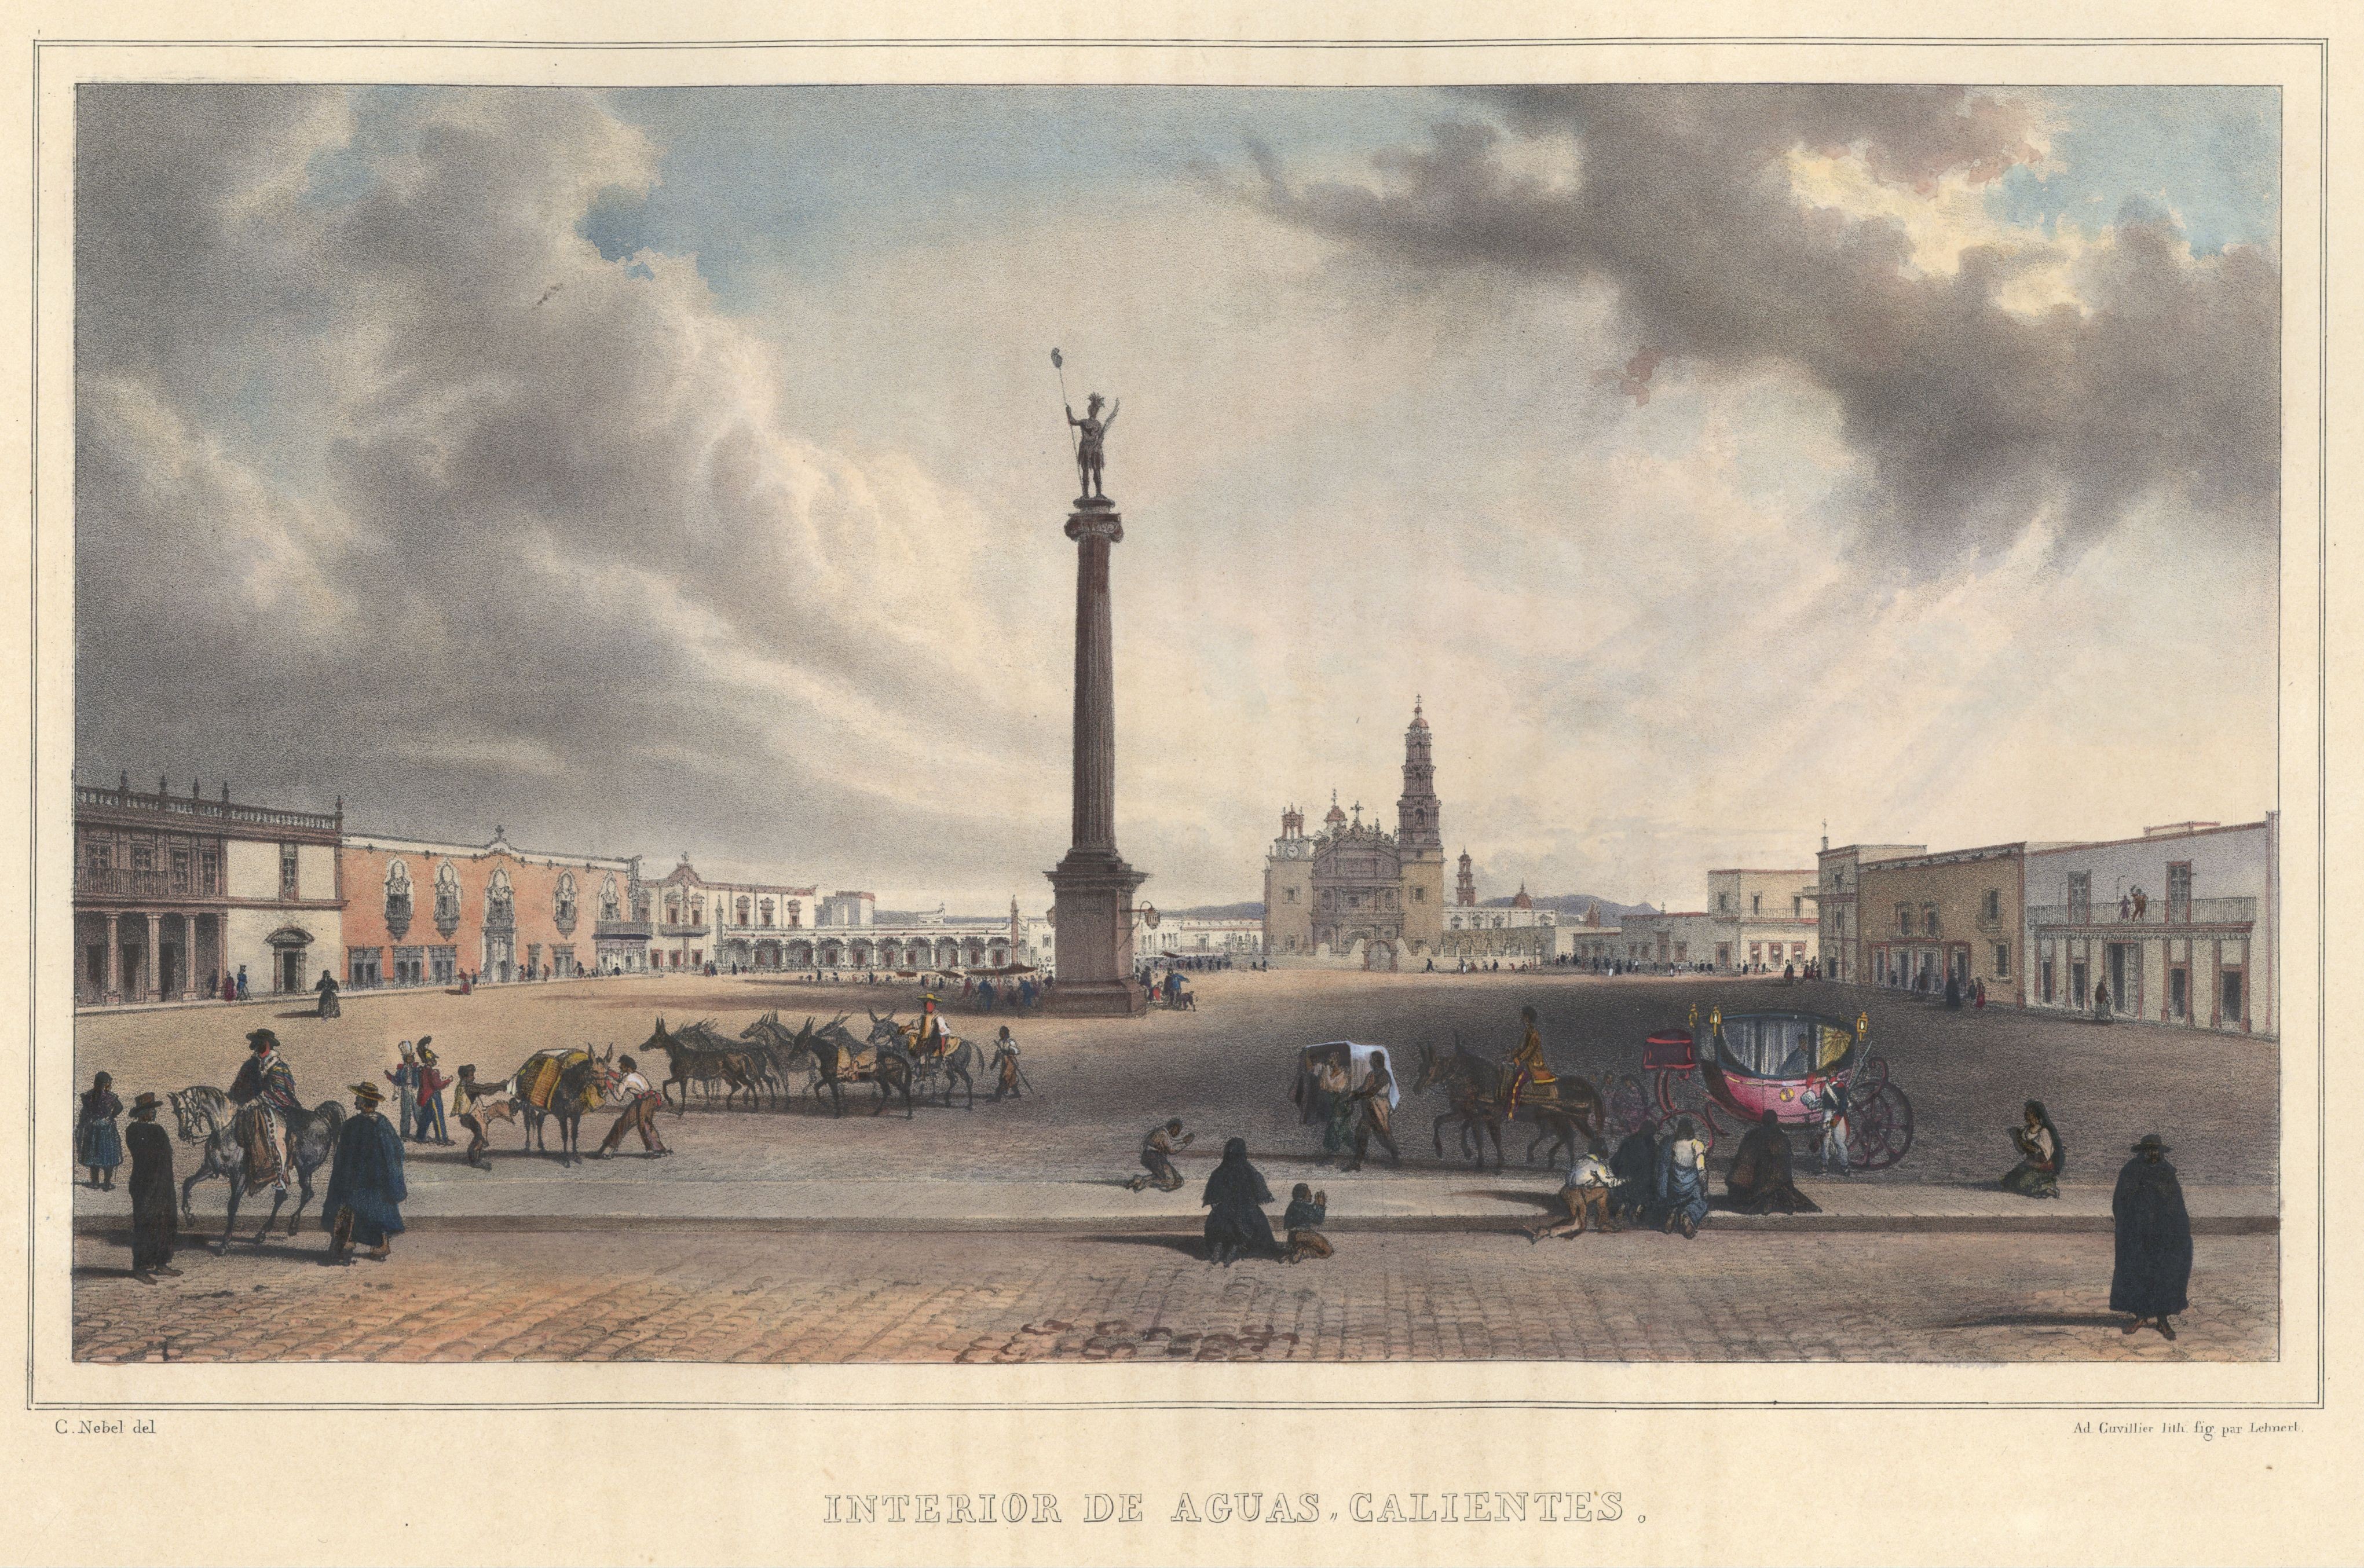 Plaza Principal, c. 1828. Una de las imágenes más conocidas de la ciudad de Aguascalientes, México en el siglo XIX. Litografía de Carl Nebel.